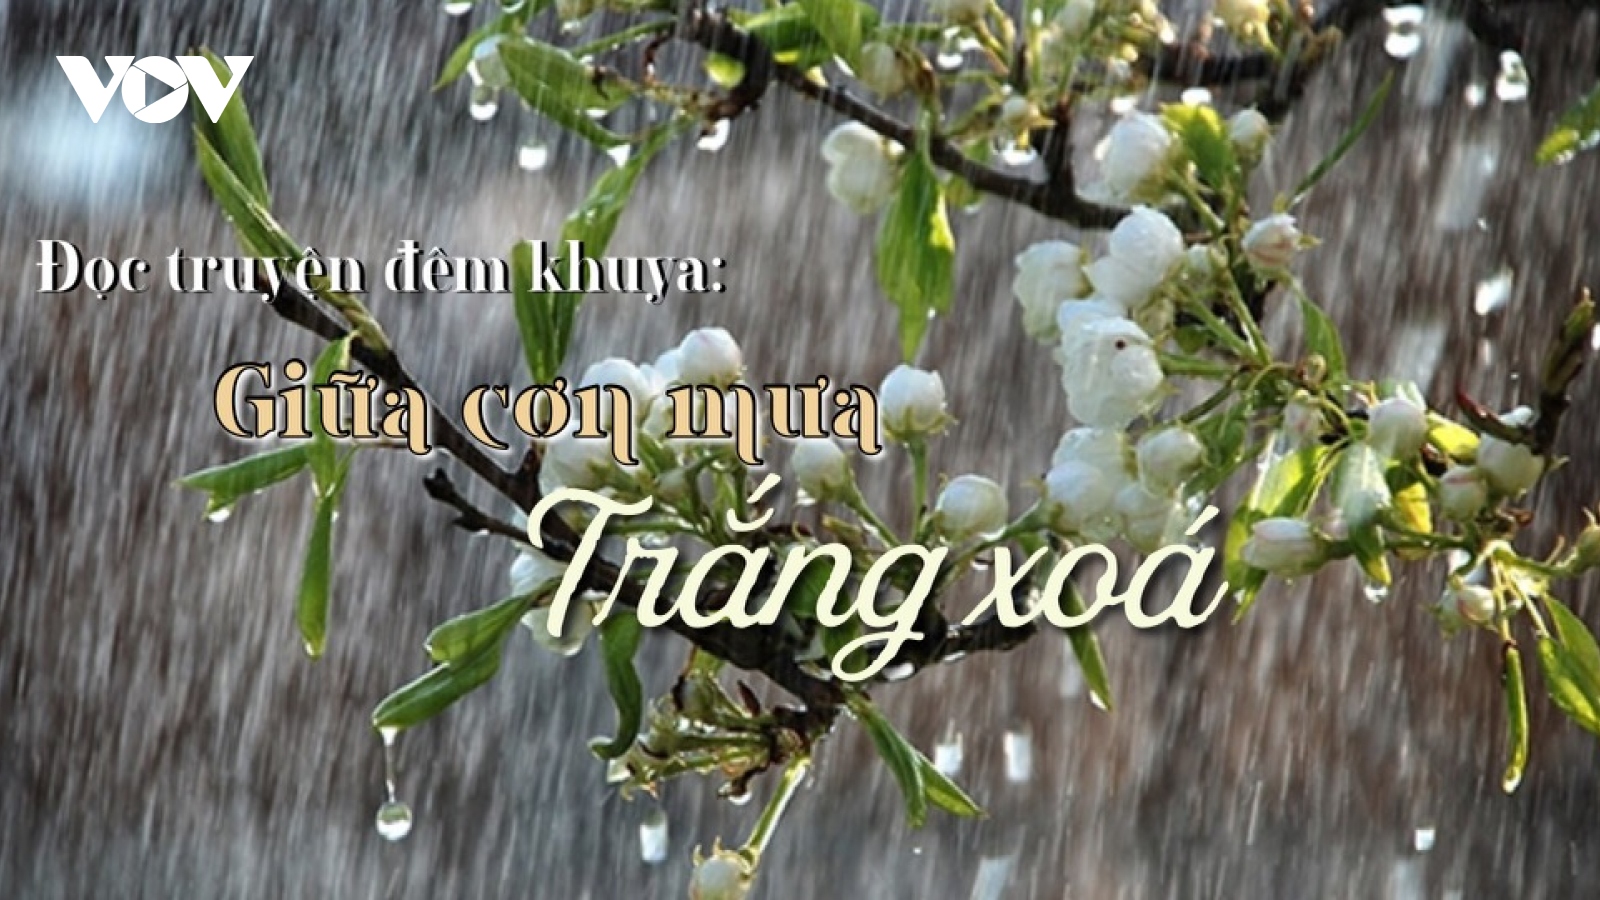 Truyện ngắn "Giữa cơn mưa trắng xoá" - Níu giữ văn hoá buôn làng